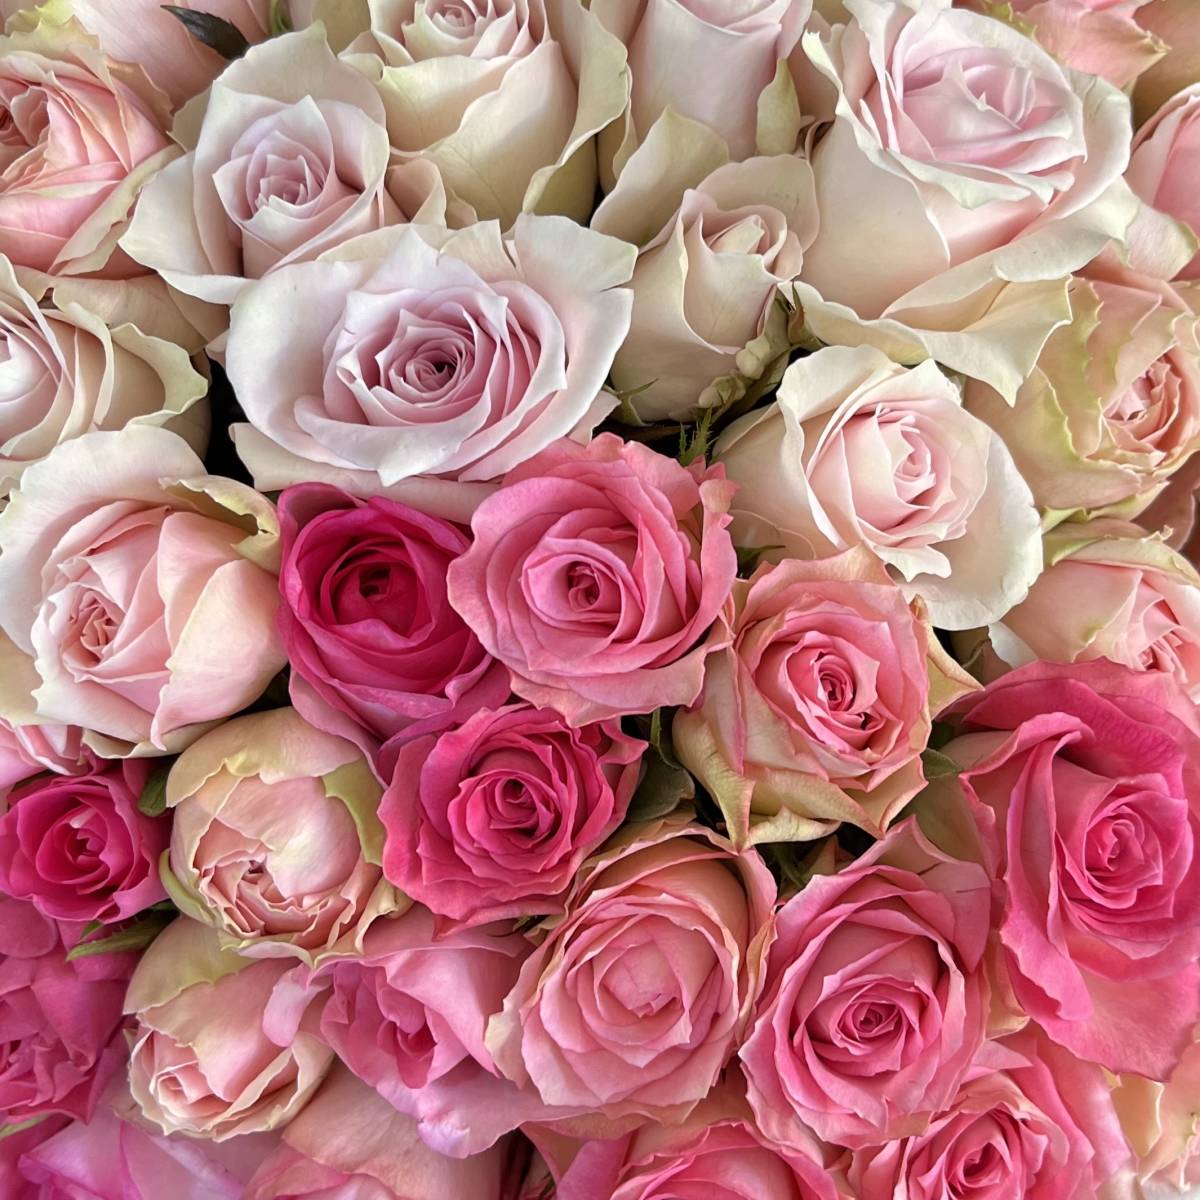 　 раздельно  （... цветы    *  ... цветы  ）  розовый  микс   30㎝　SM размер  　30 шт.  　 место производства  прямая доставка  ！... степень отличный  ！...　 цветы  ...